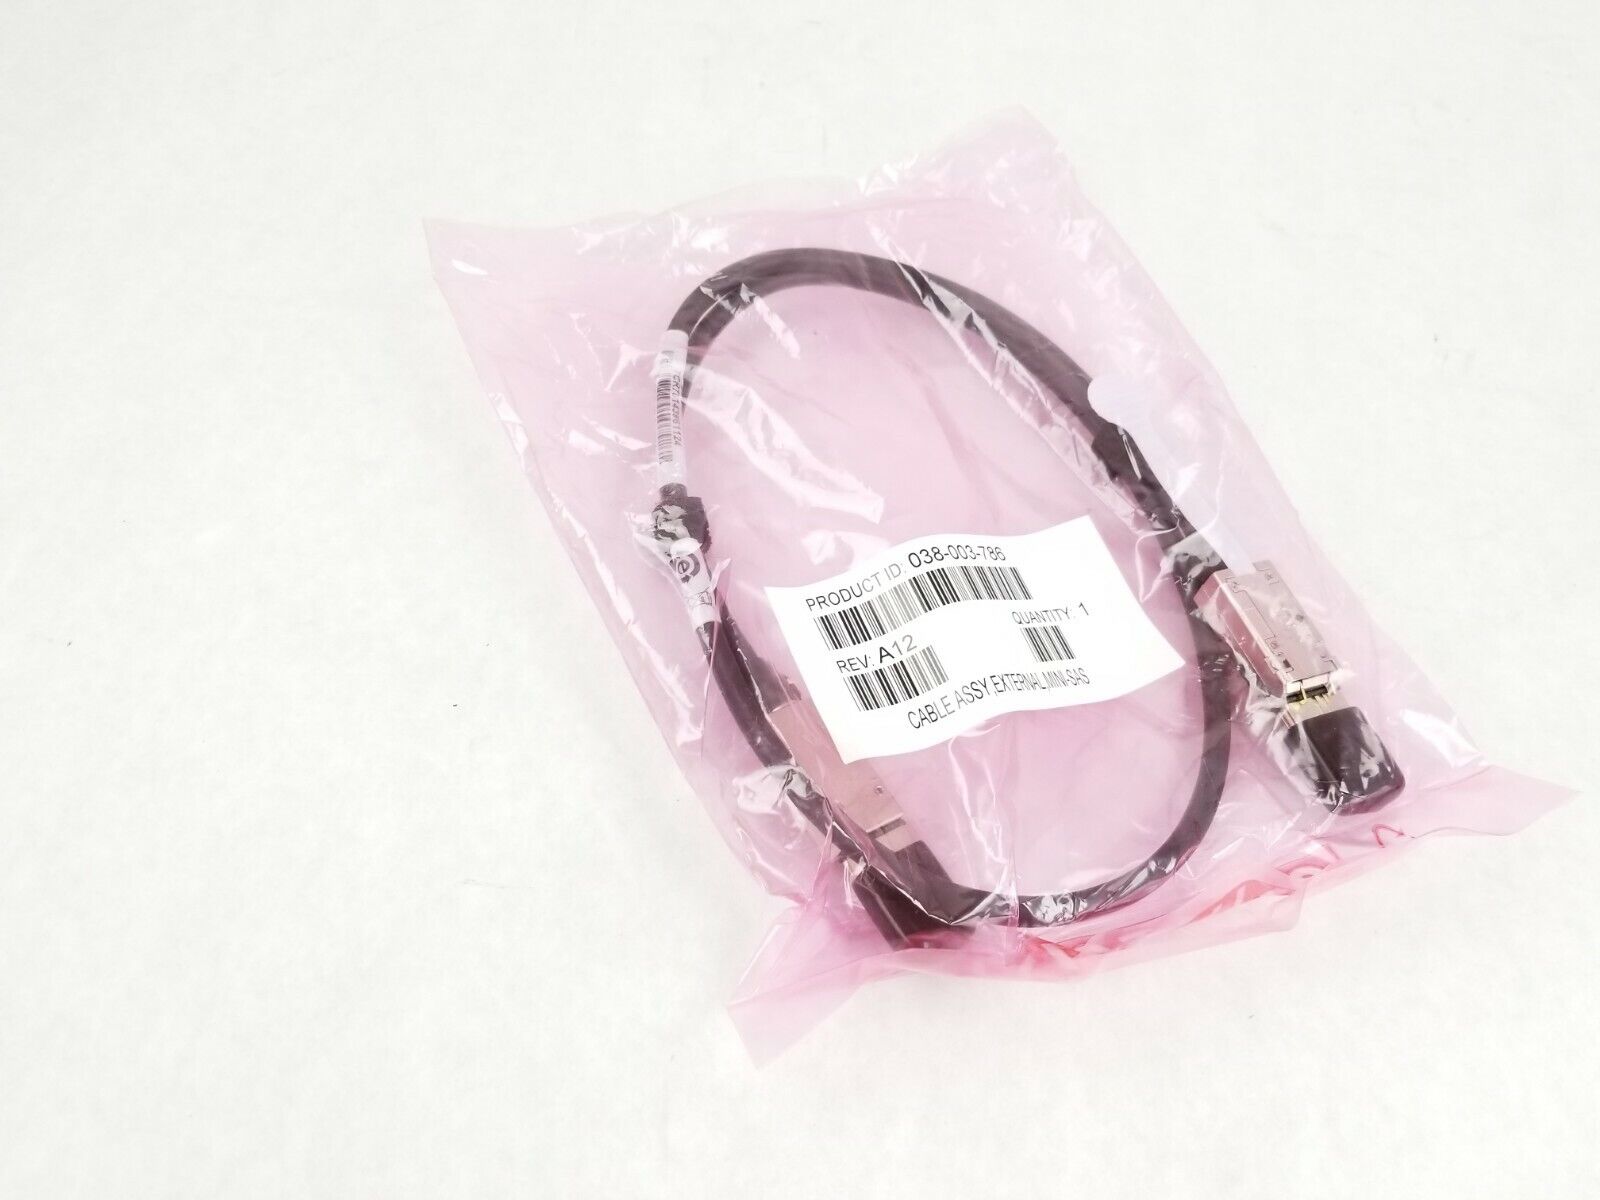 EMC 038-003-786  Mini-Sas To Mini-Sas Thin 30 Gauge 1m Keyed Cable Assembly